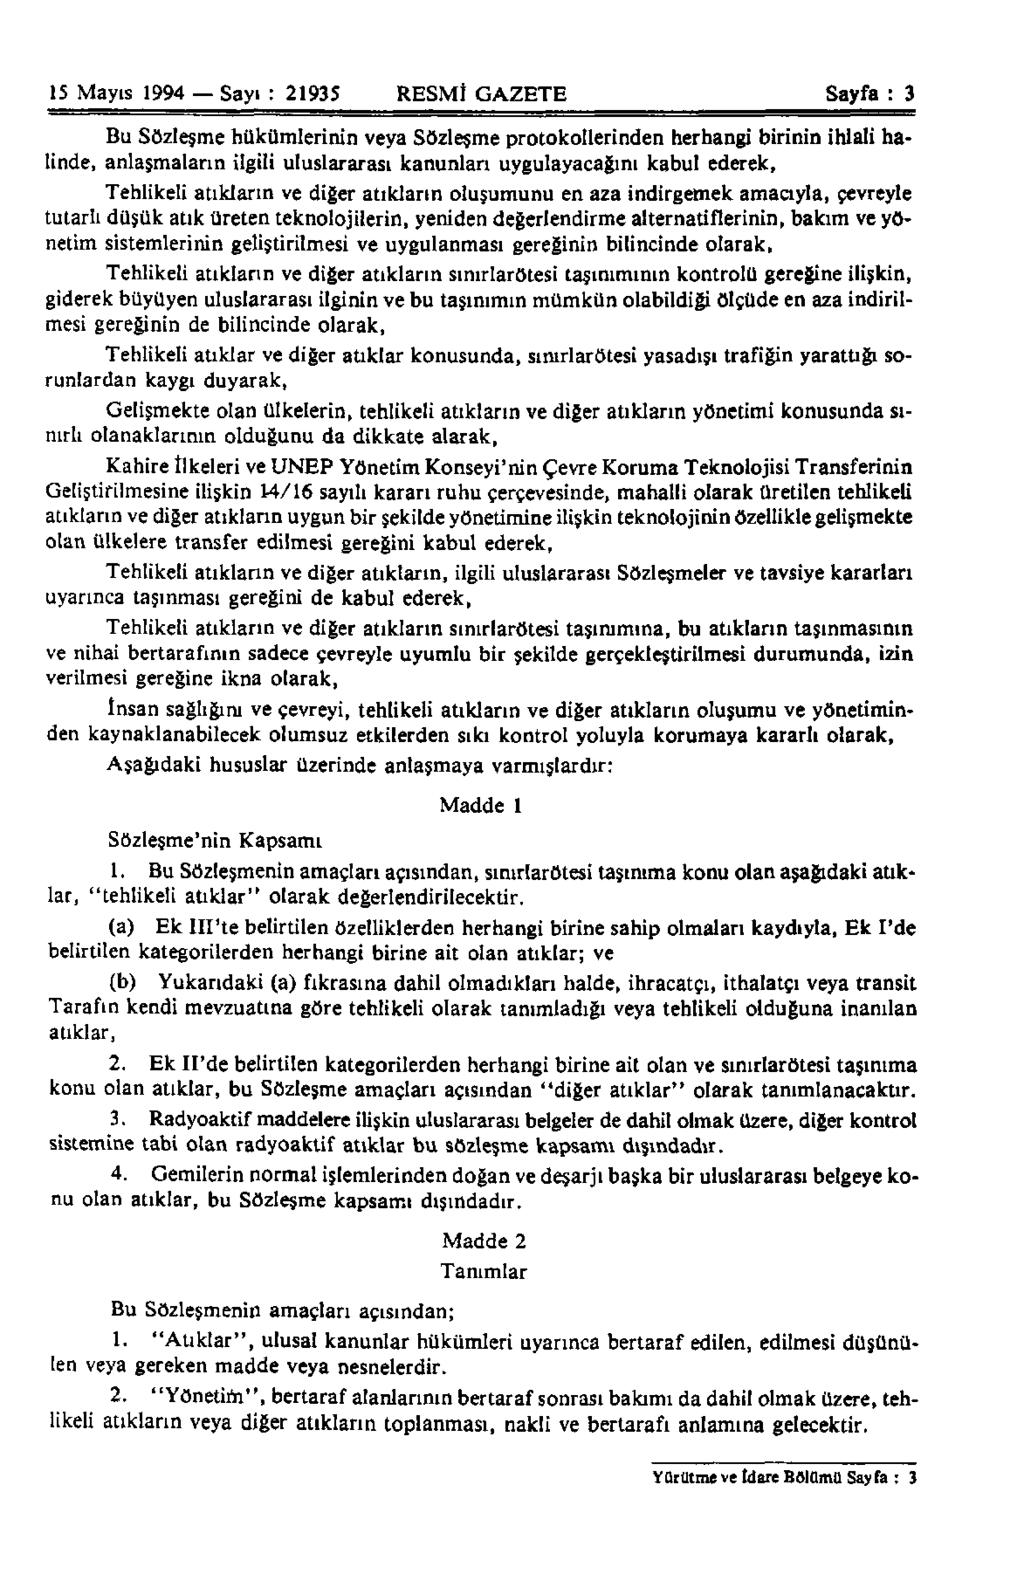 15 Mayıs 1994 Sayı : 21935 RESMÎ GAZETE Sayfa : 3 Bu Sözleşme hükümlerinin veya Sözleşme protokollerinden herhangi birinin ihlali halinde, anlaşmaların ilgili uluslararası kanunları uygulayacağını